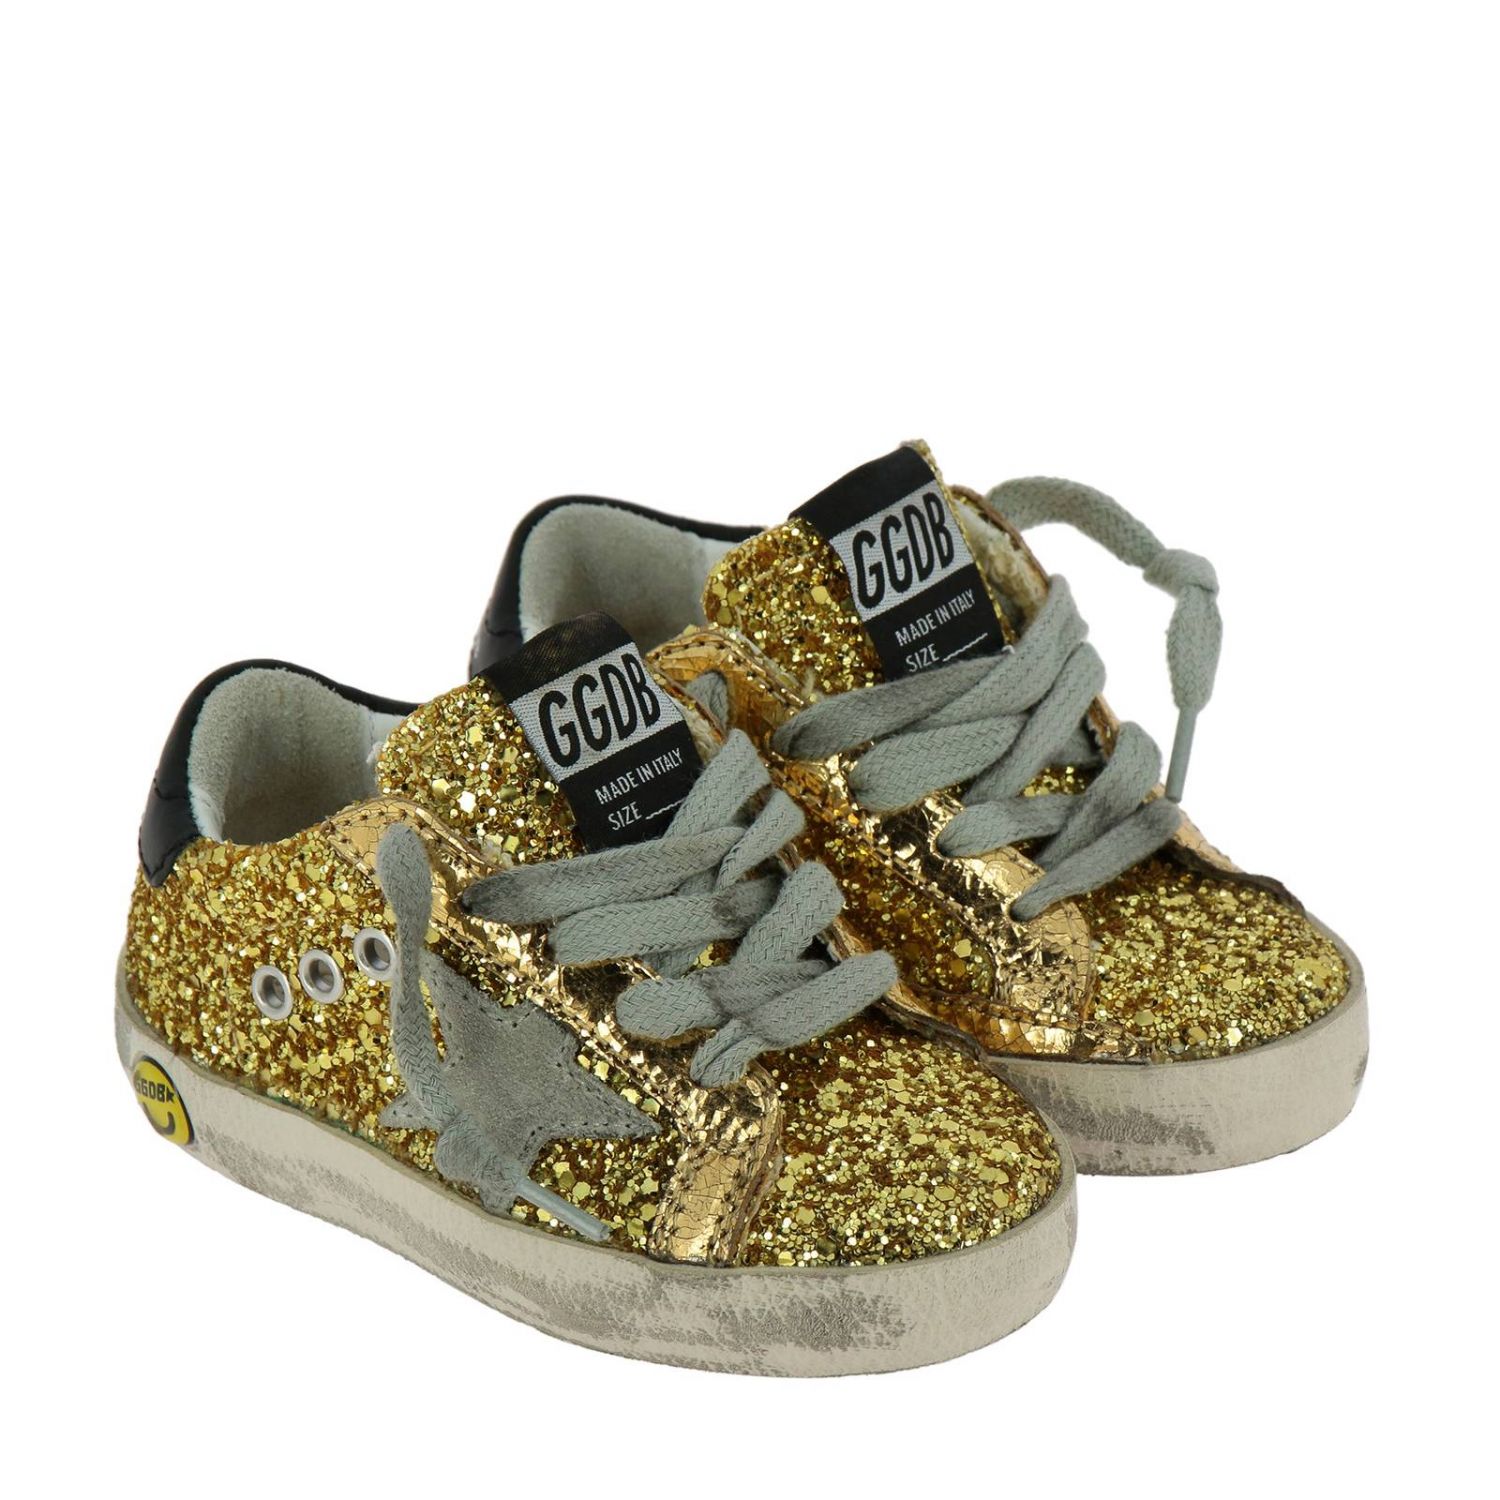 Golden Goose Outlet: Shoes kids | Shoes Golden Goose Kids Gold | Shoes ...